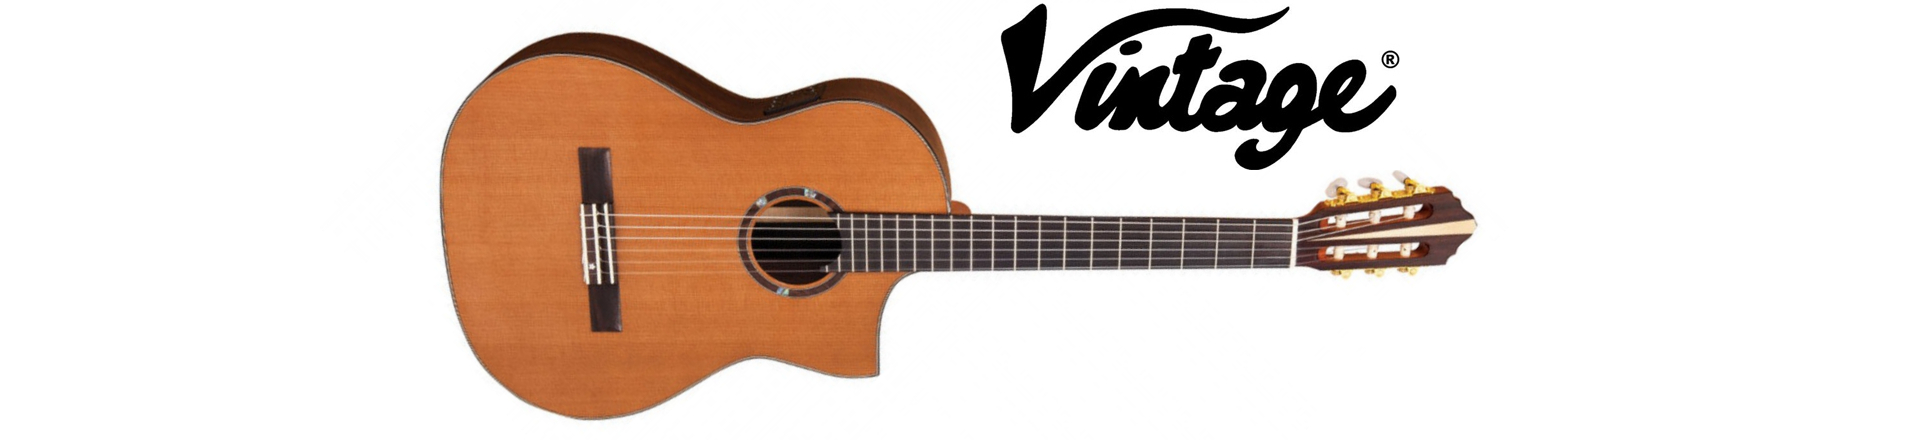 Vintage z dumą prezentuje gitarę "Roger Williams' Nylon Electro-Acoustic Crossover"